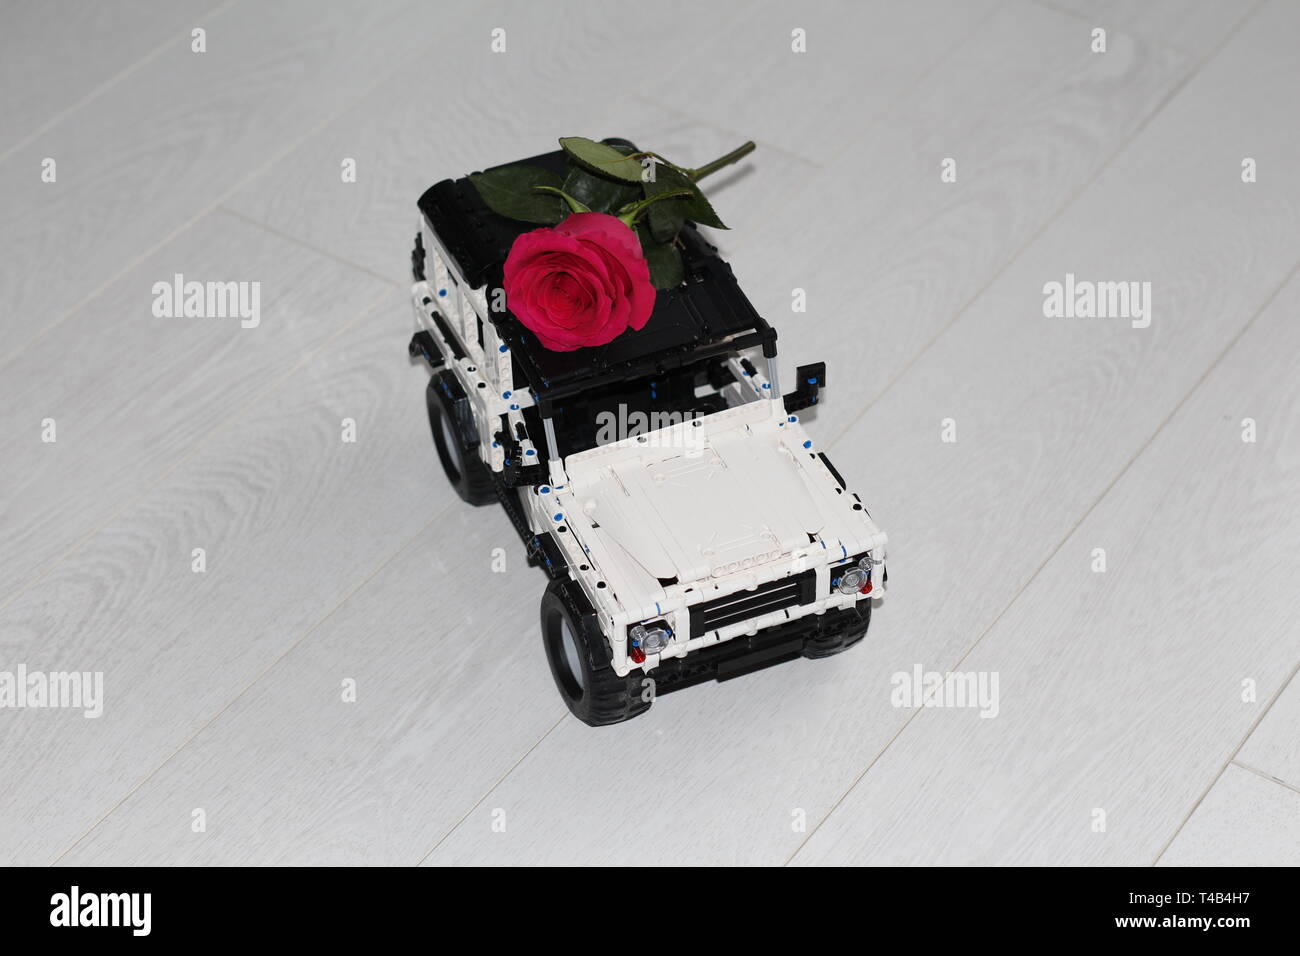 Das Spielzeug Auto SUV trägt eine rote Rose. Das Auto ist der Designer gemacht, es ist schwarz und weiß. Blume Lieferung. Stockfoto